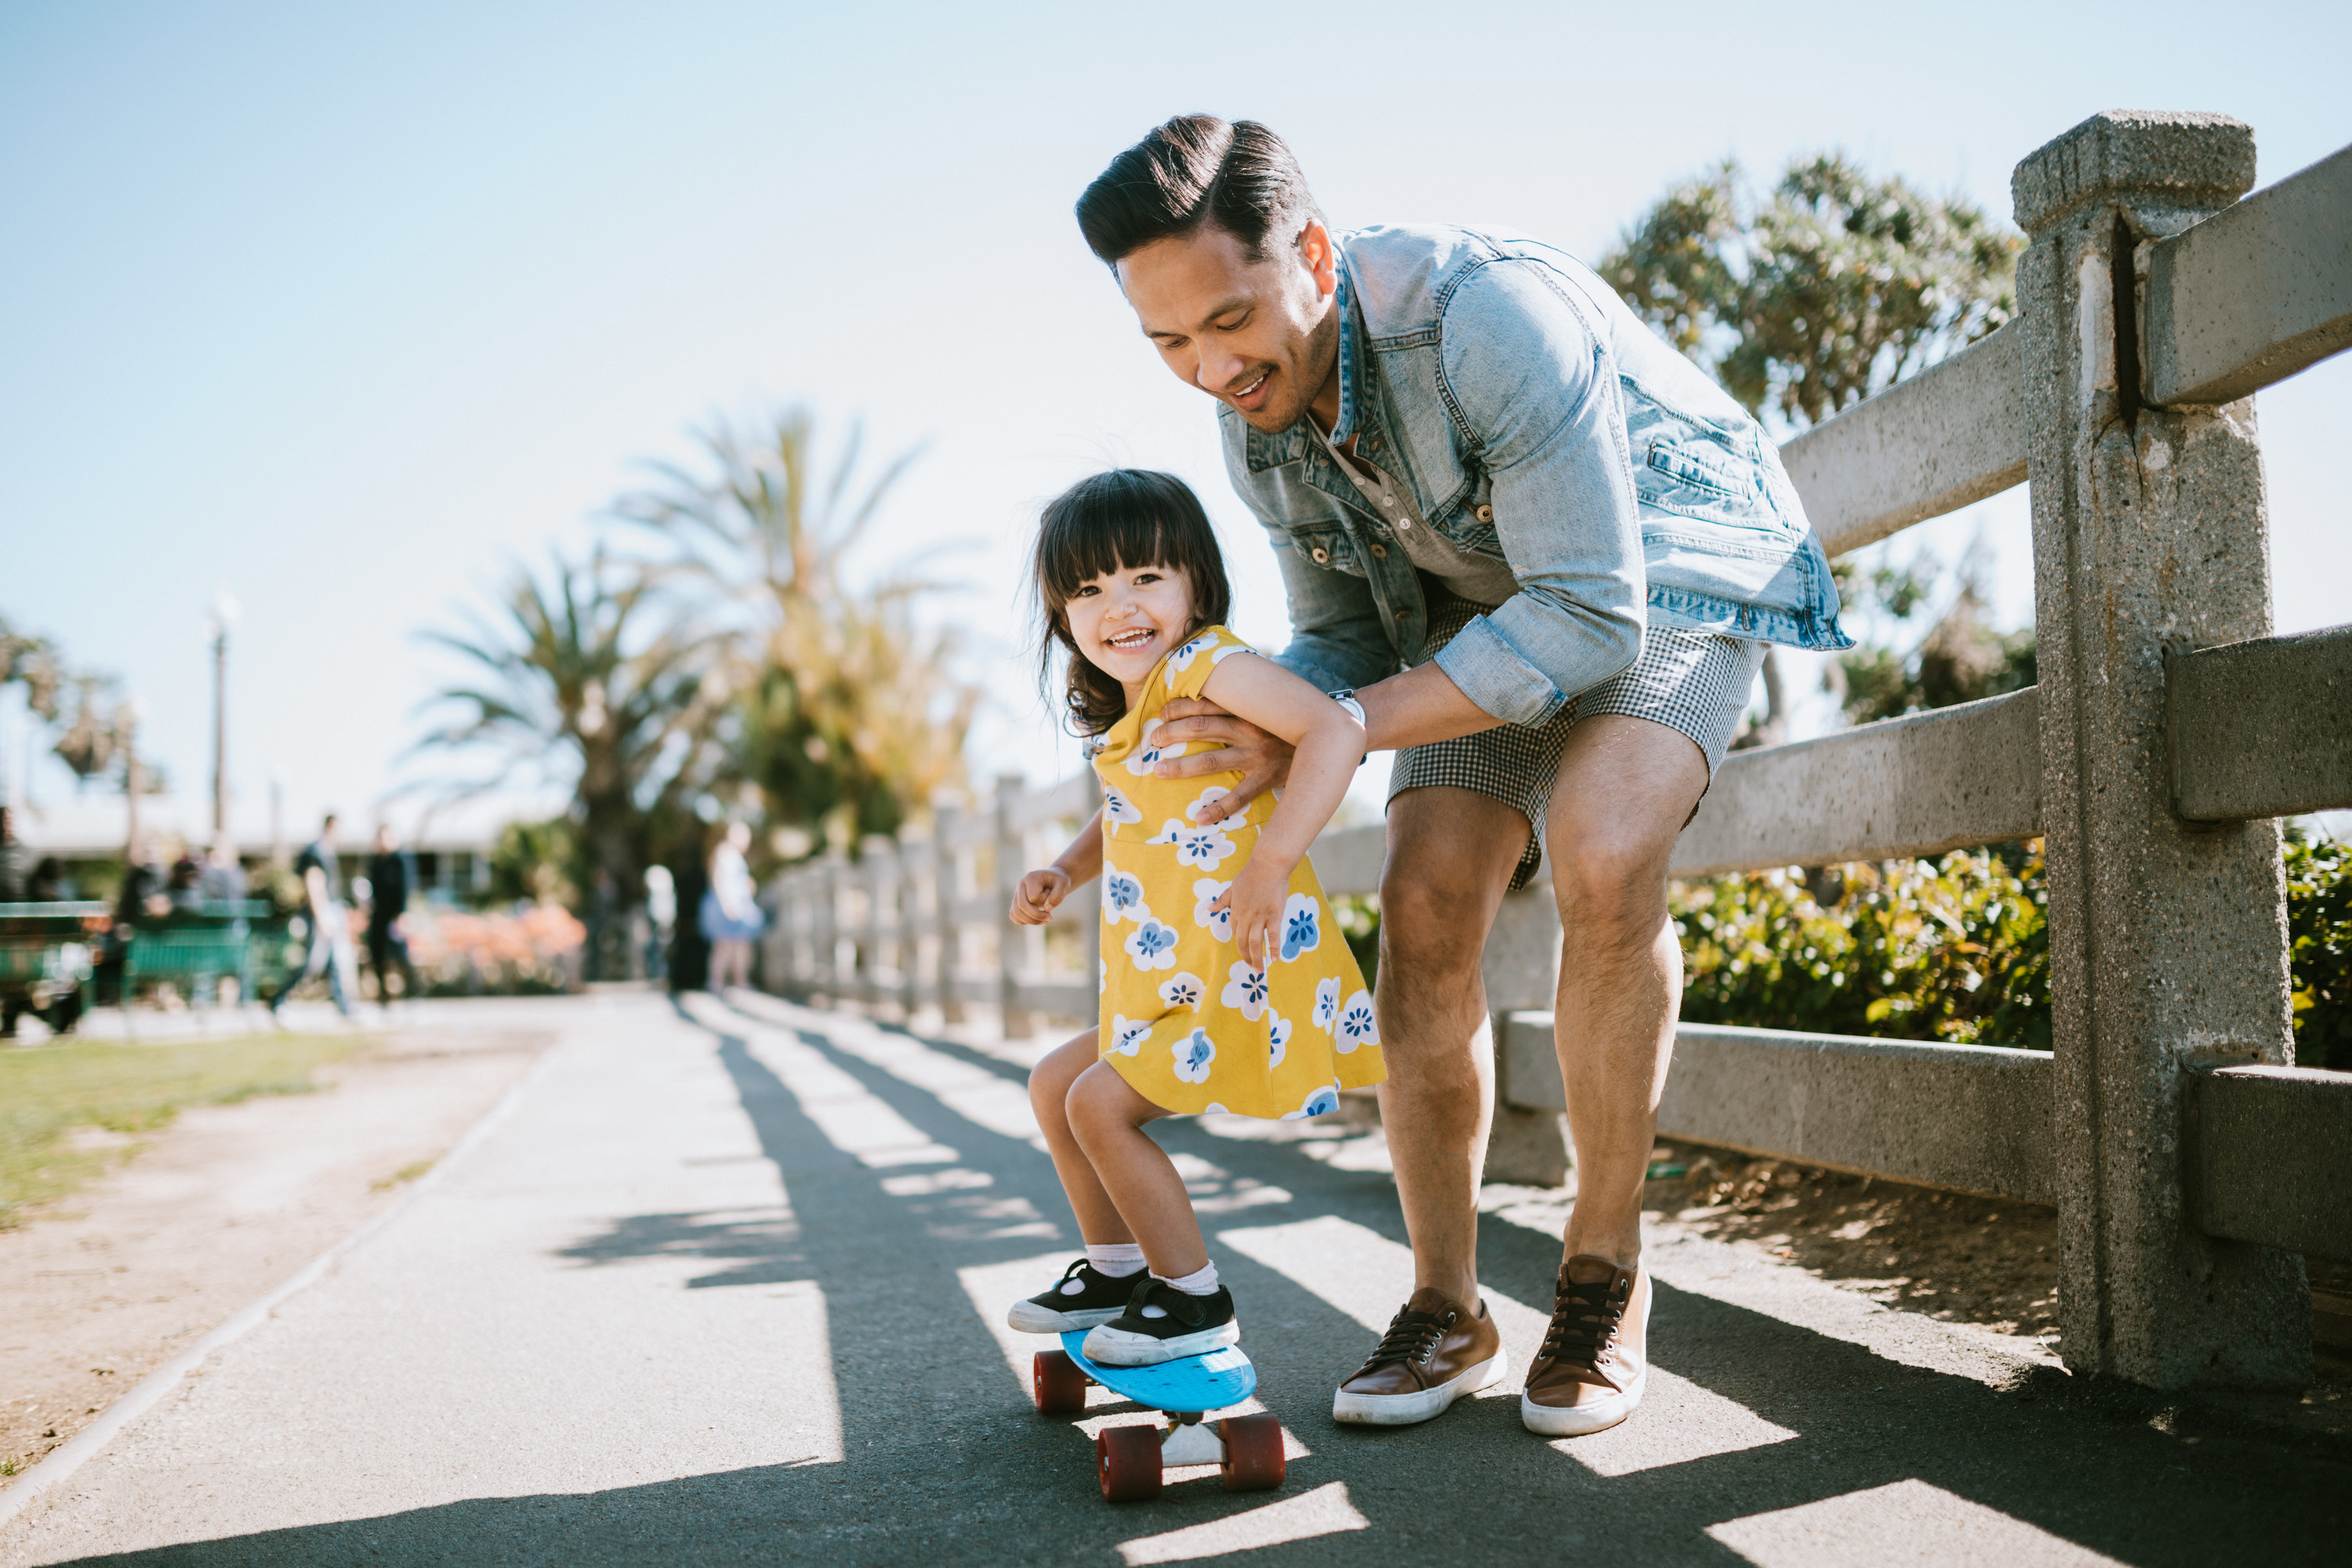 a dad helping their kid on a skateboard